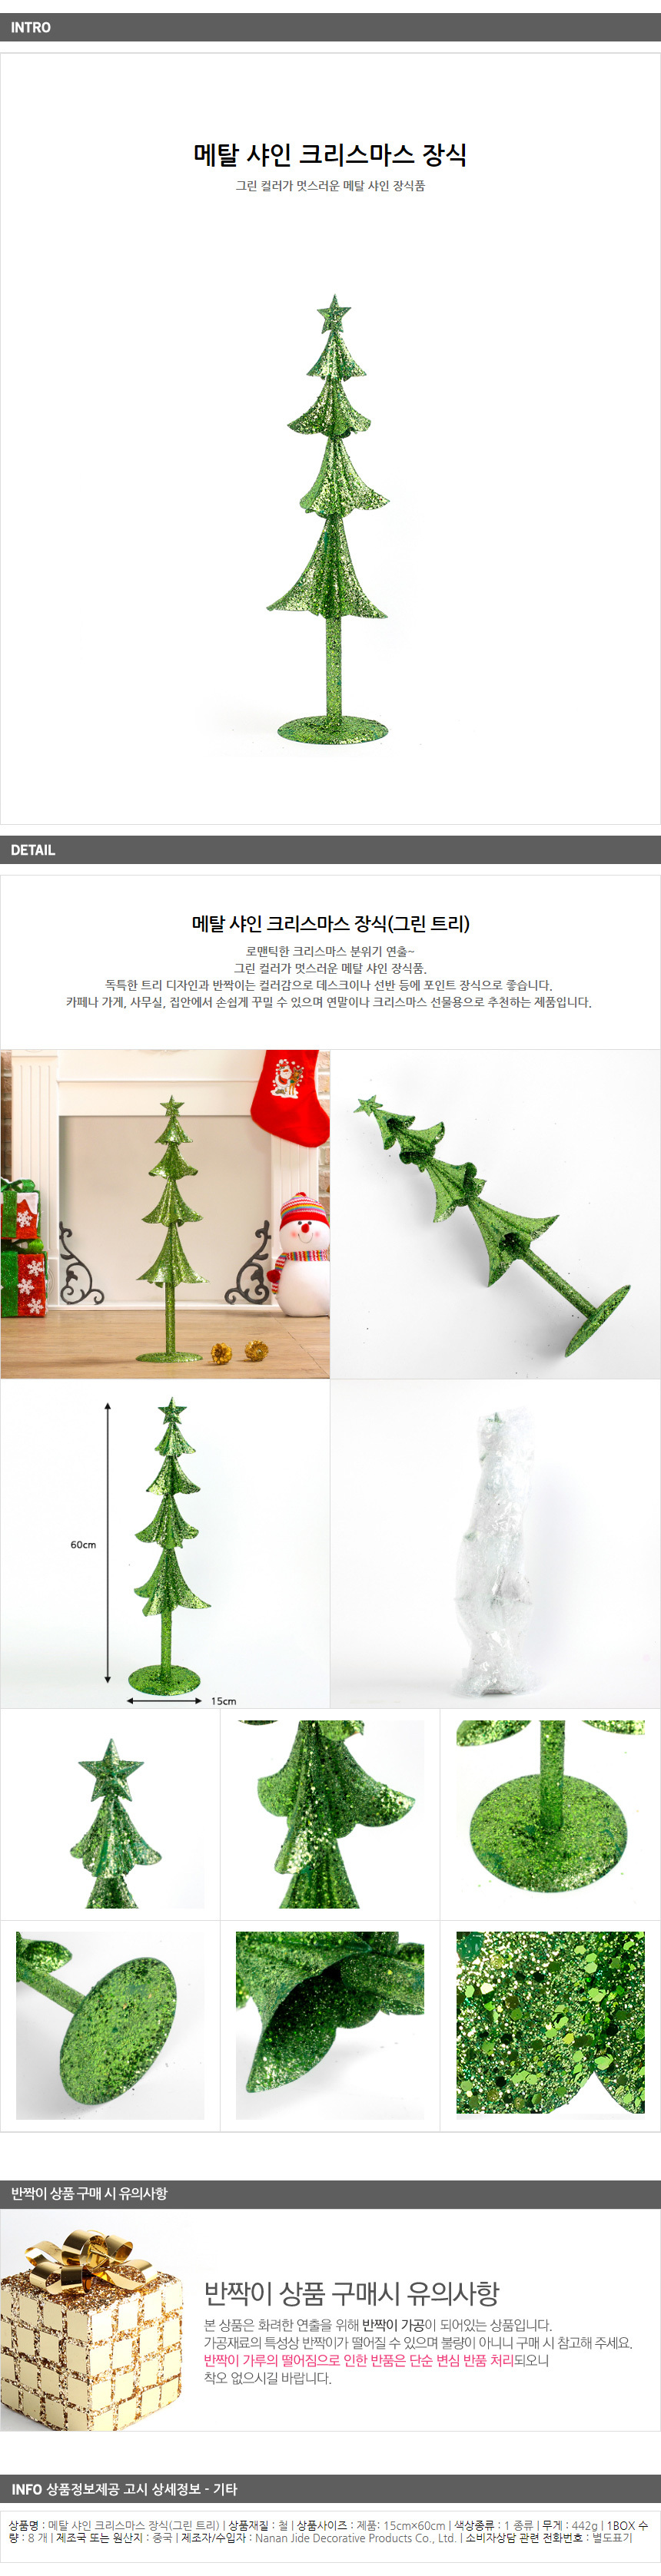 크리스마스장식 이색트리 60cm 겨울장식 트리나무